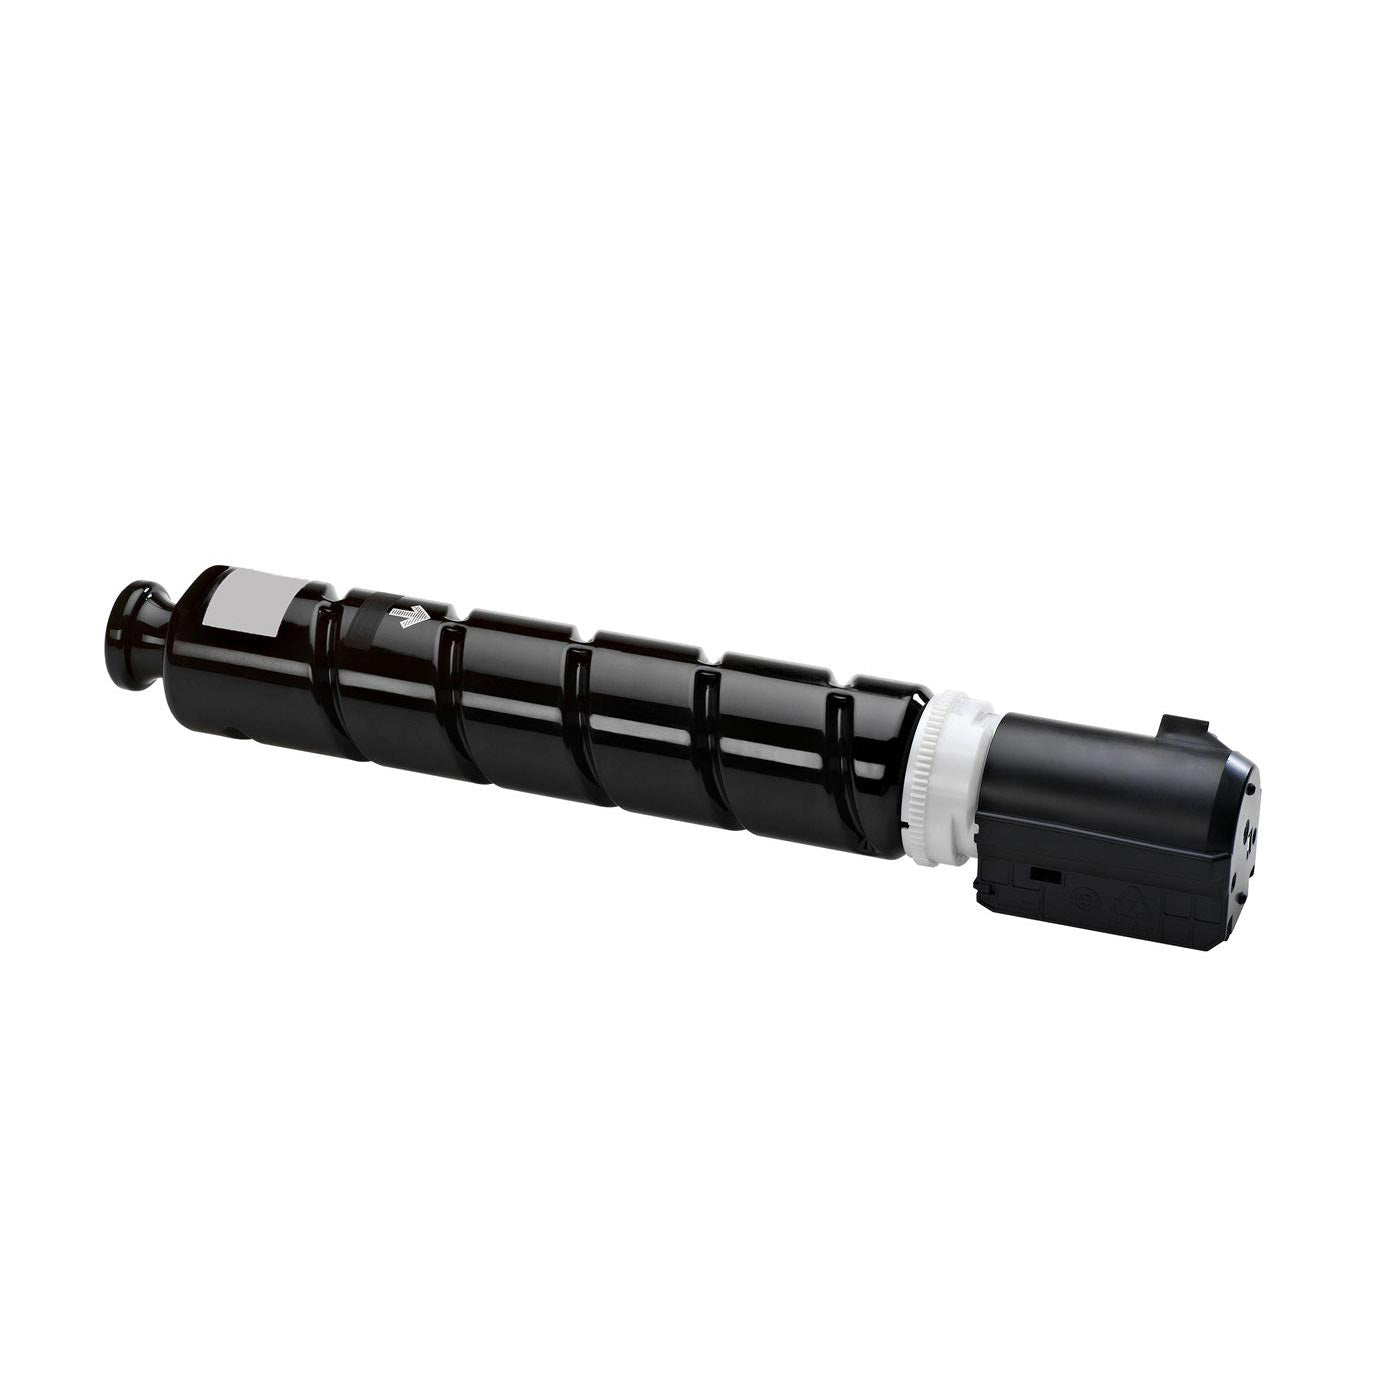 tonerkatusche kompatibel fur canon i sensys mf 810 820 Black